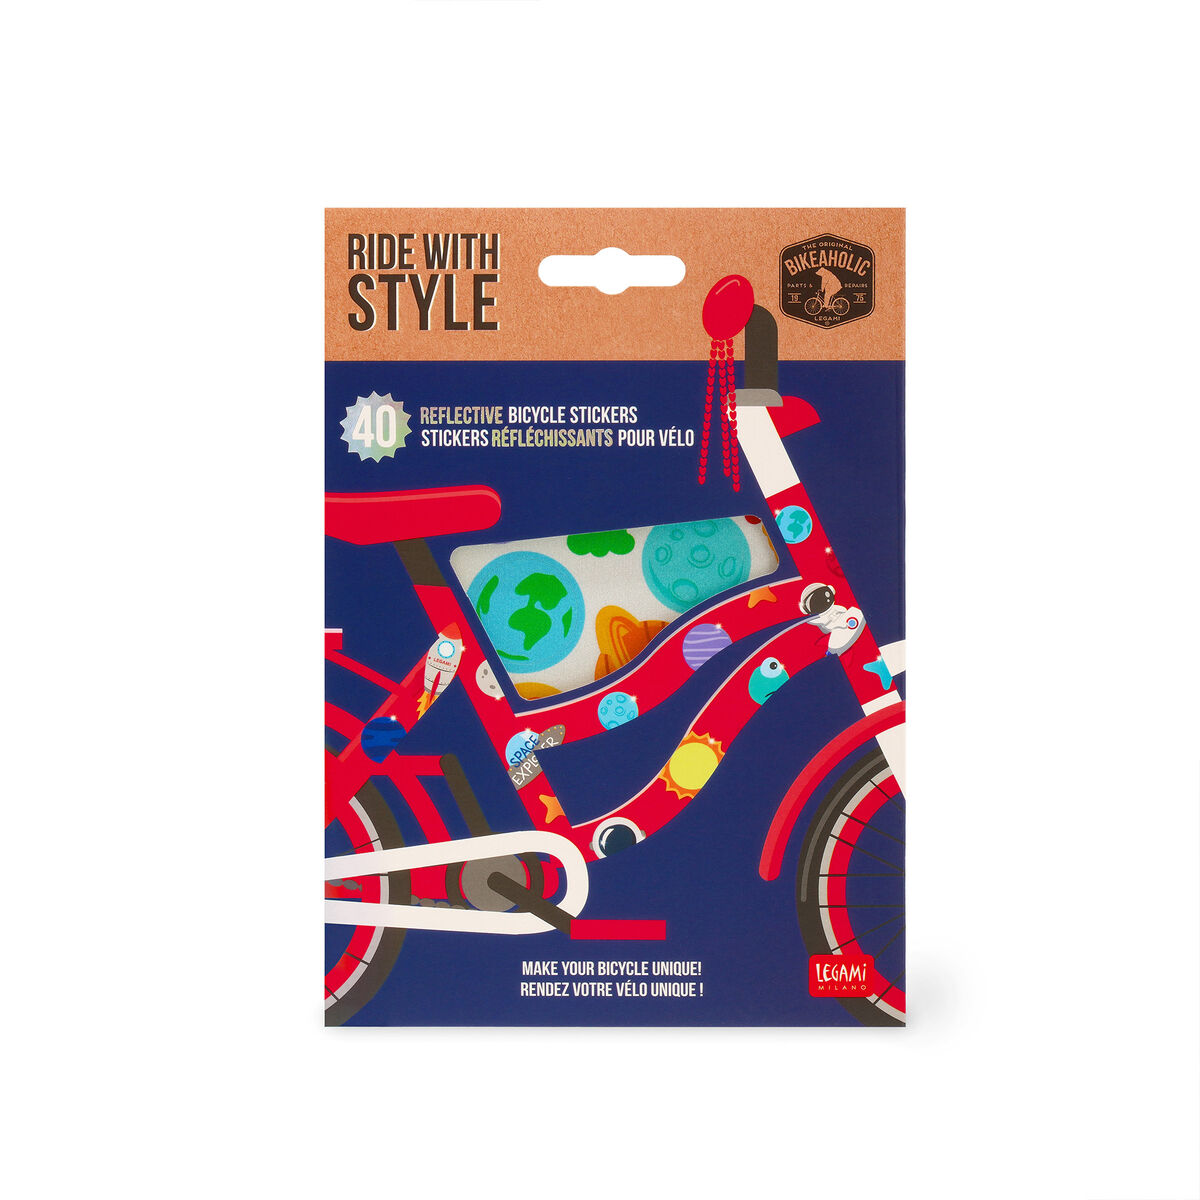 Stickers Riflettenti Per Bicicletta - Ride With Style, , zoo